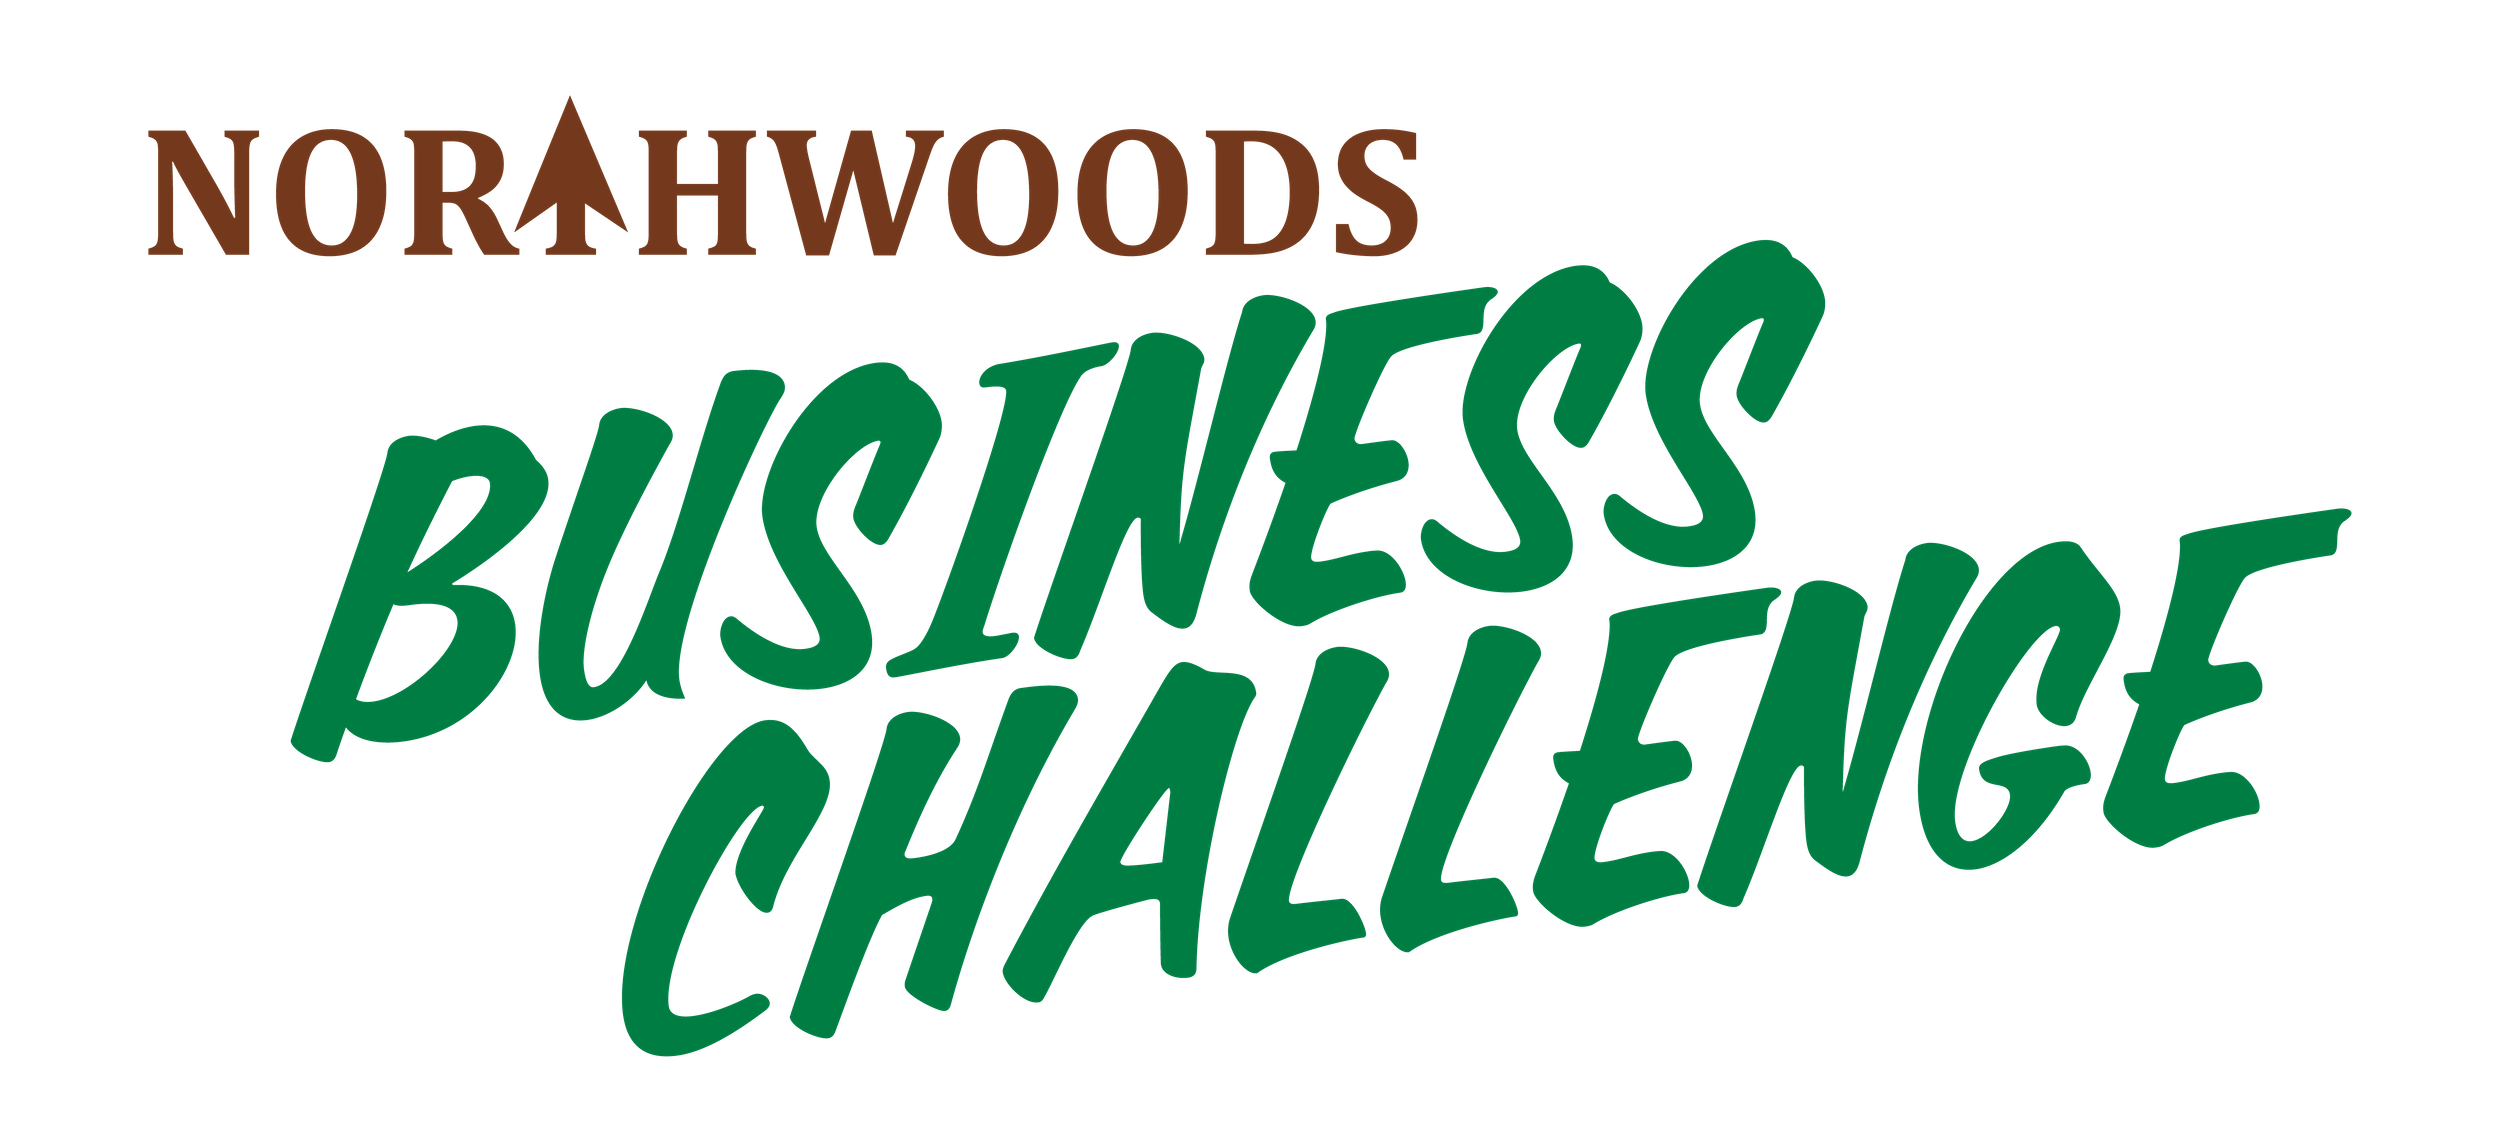 Northwoods Business Herausforderung